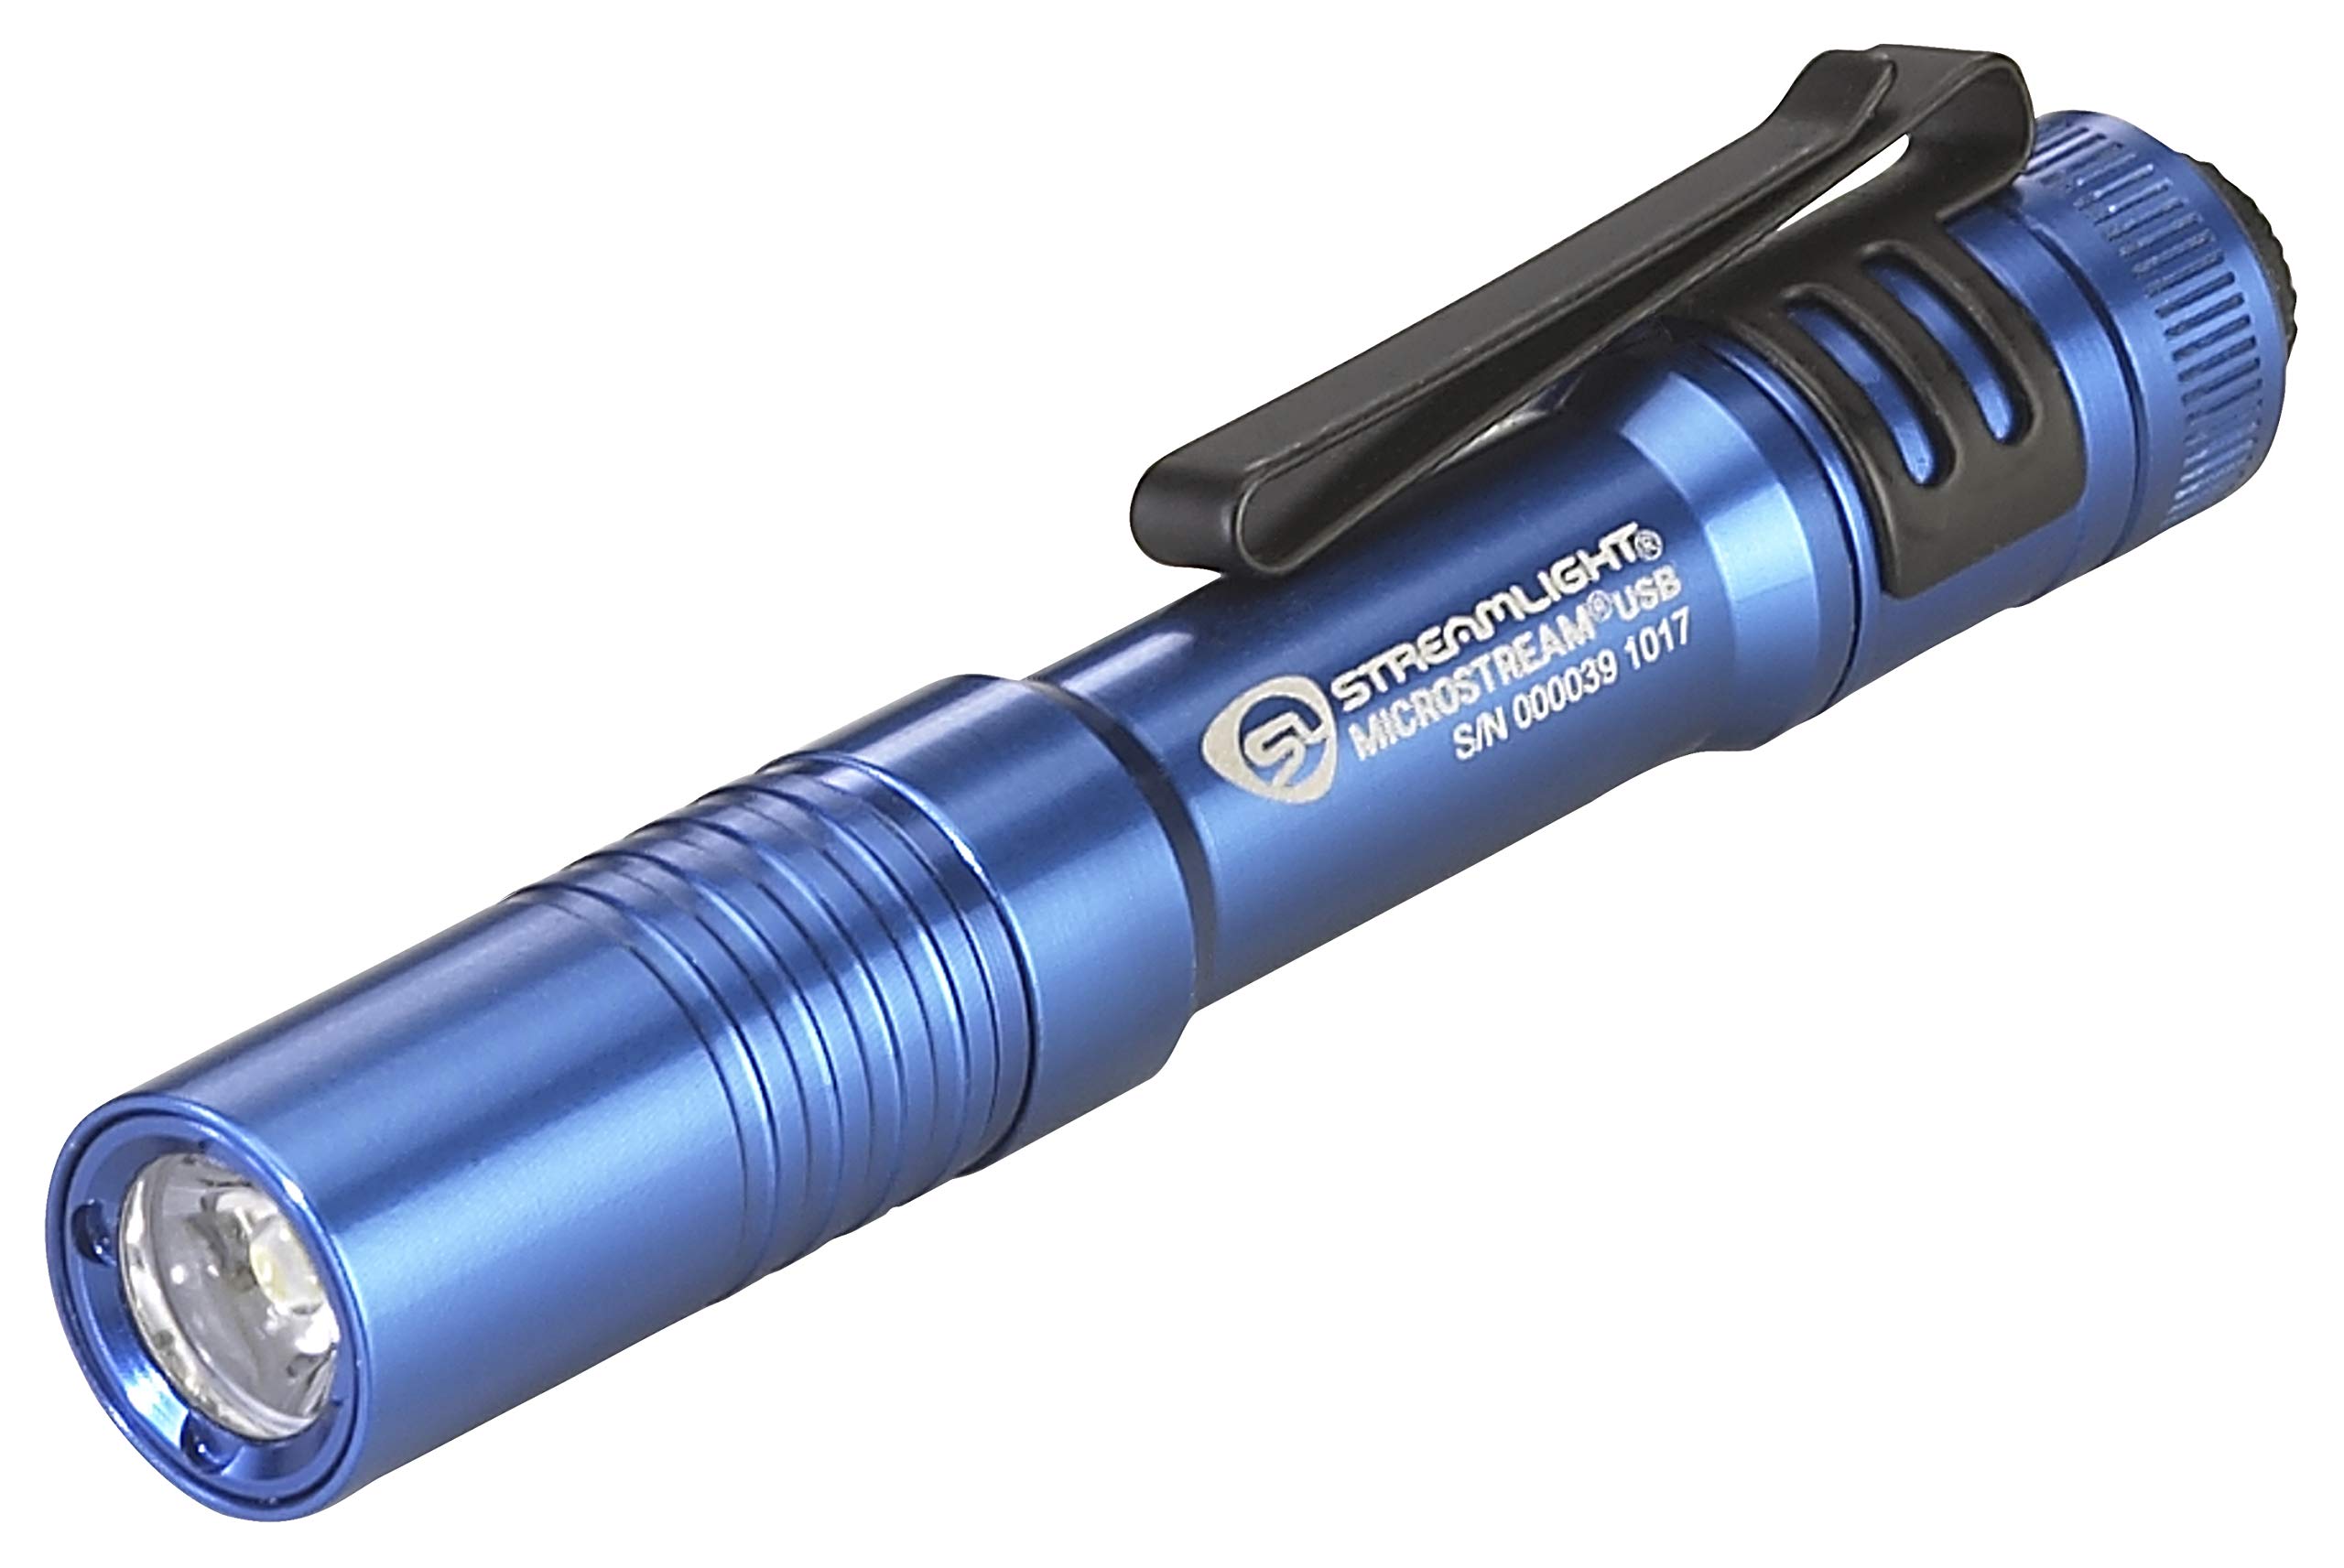 Streamlight 66609 Microstream USB 250-Lumen Tägliches Tragen Wiederaufladbare Taschenlampe mit USB Kabel und Umhängeband, Kojote